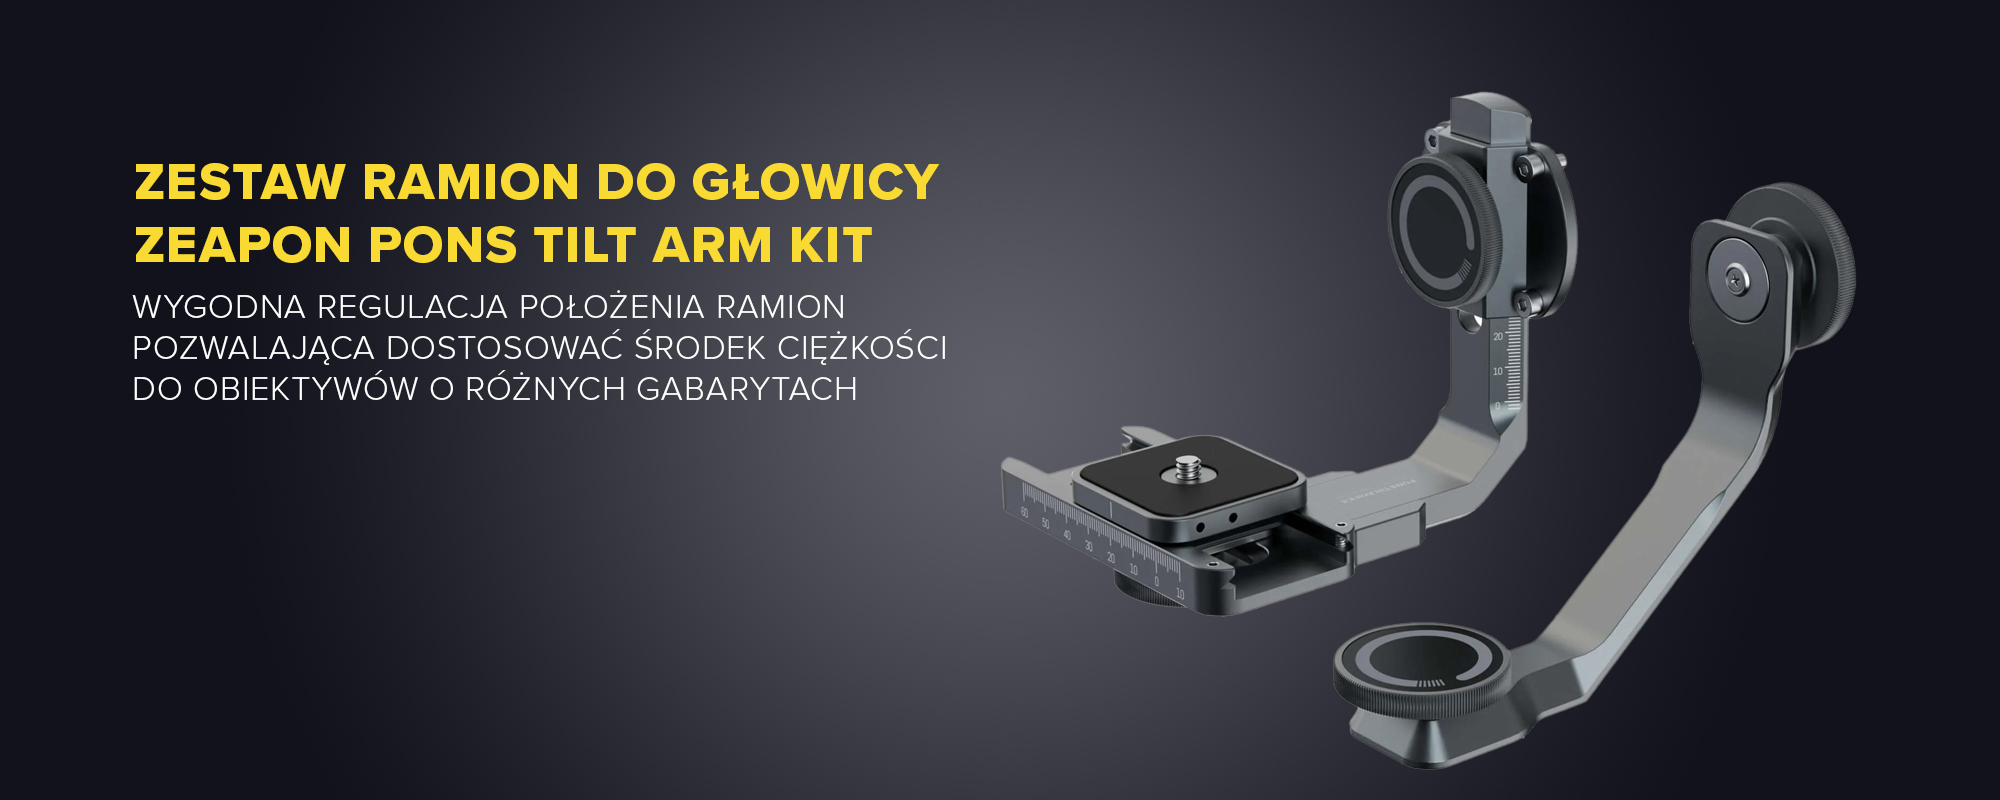 Zestaw ramion do głowicy Zeapon Pons Tilt Arm Kit - Odkryj nowe możliwości 